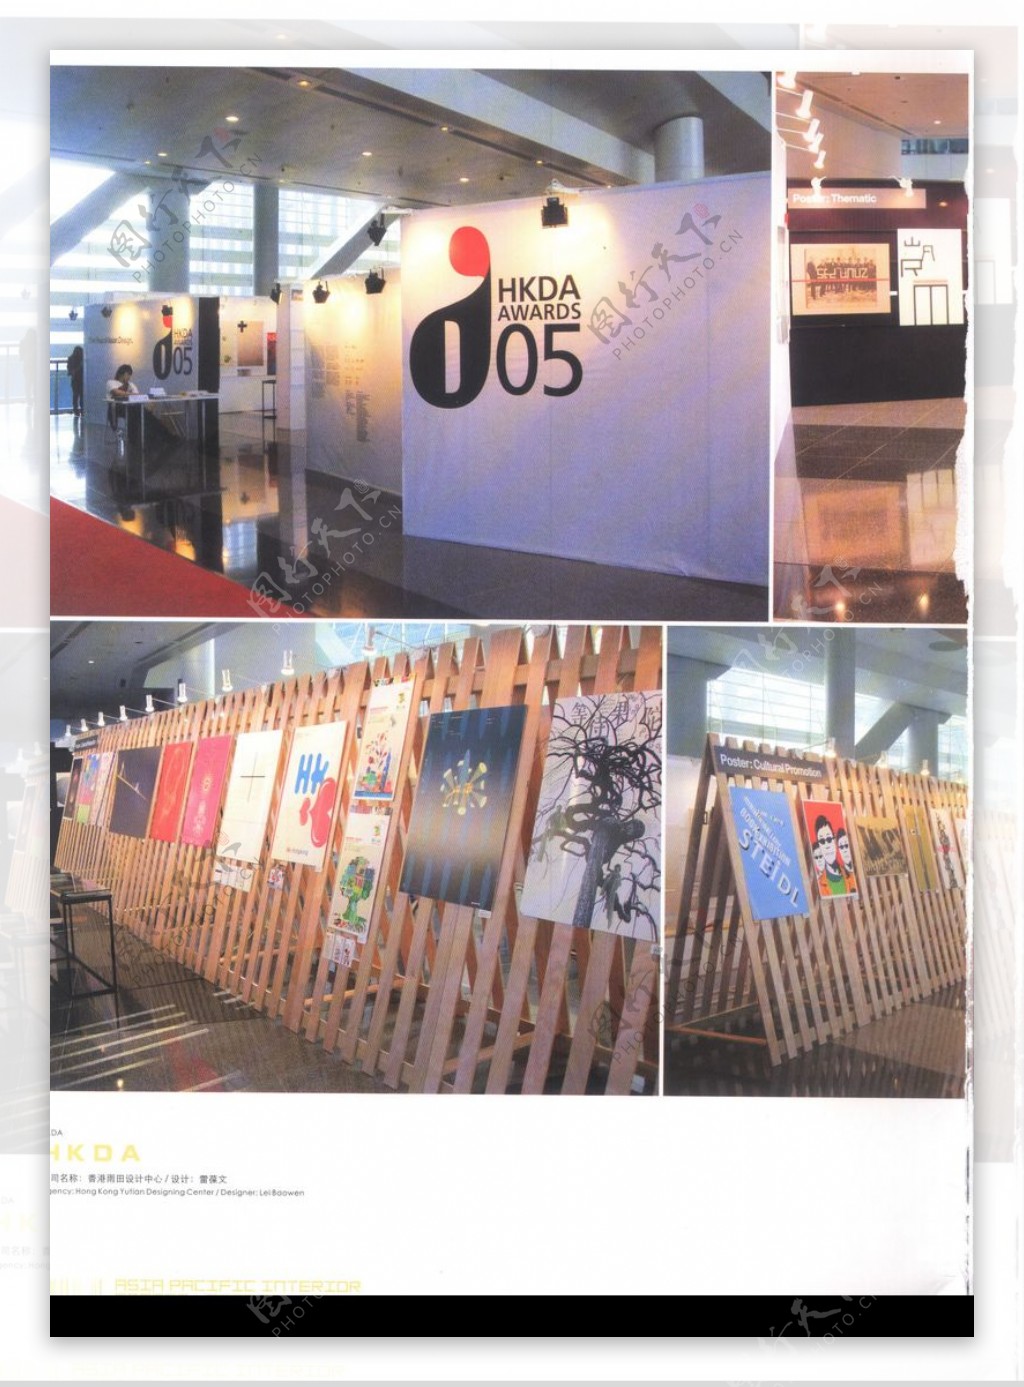 亚太室内设计年鉴2007商业展览展示0100